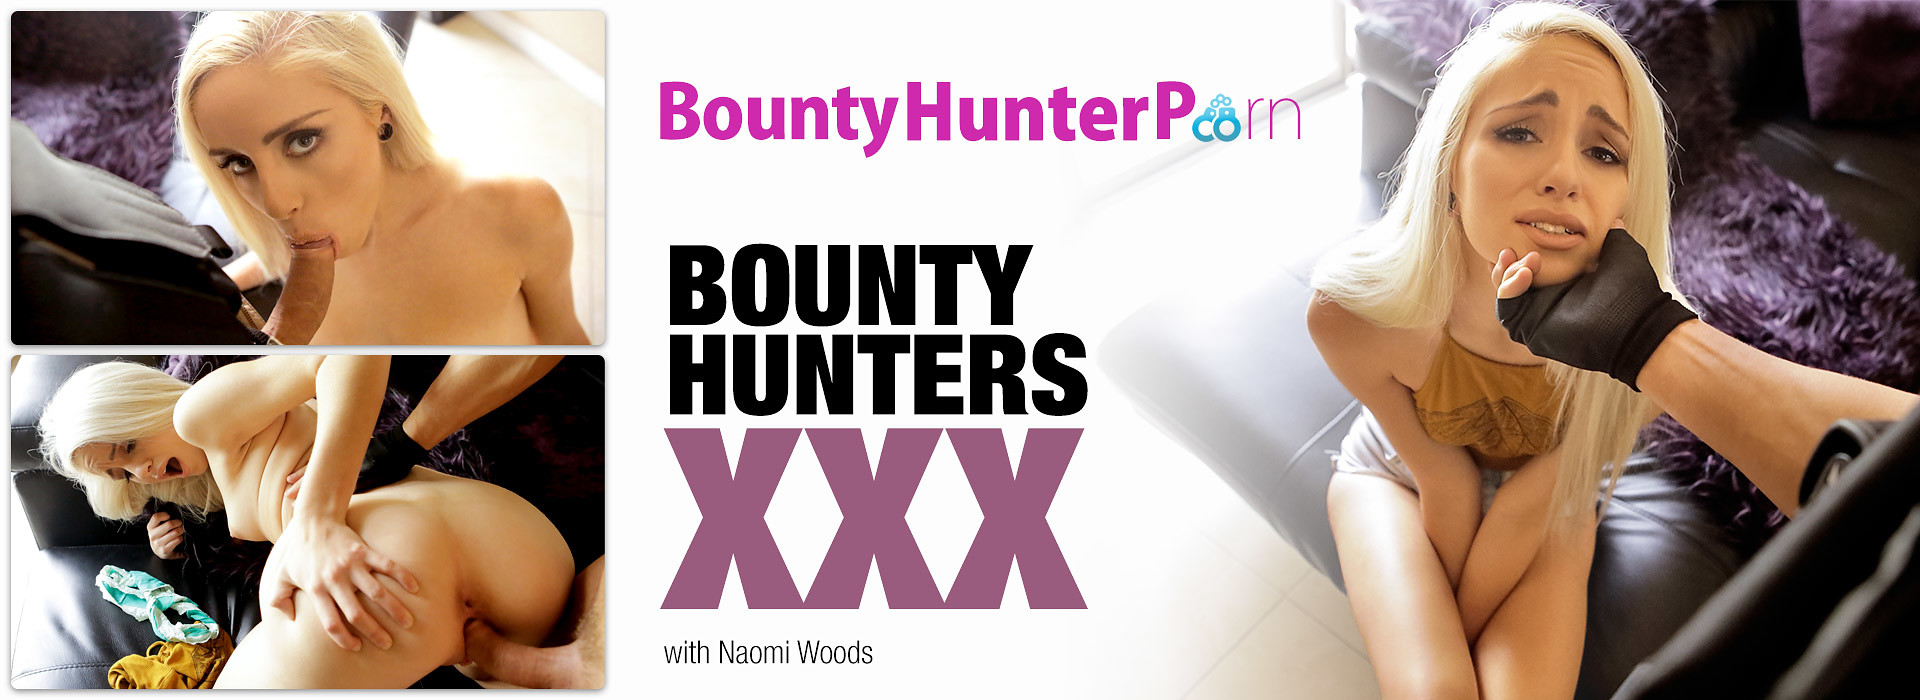 1920px x 700px - Bounty Hunter Porn